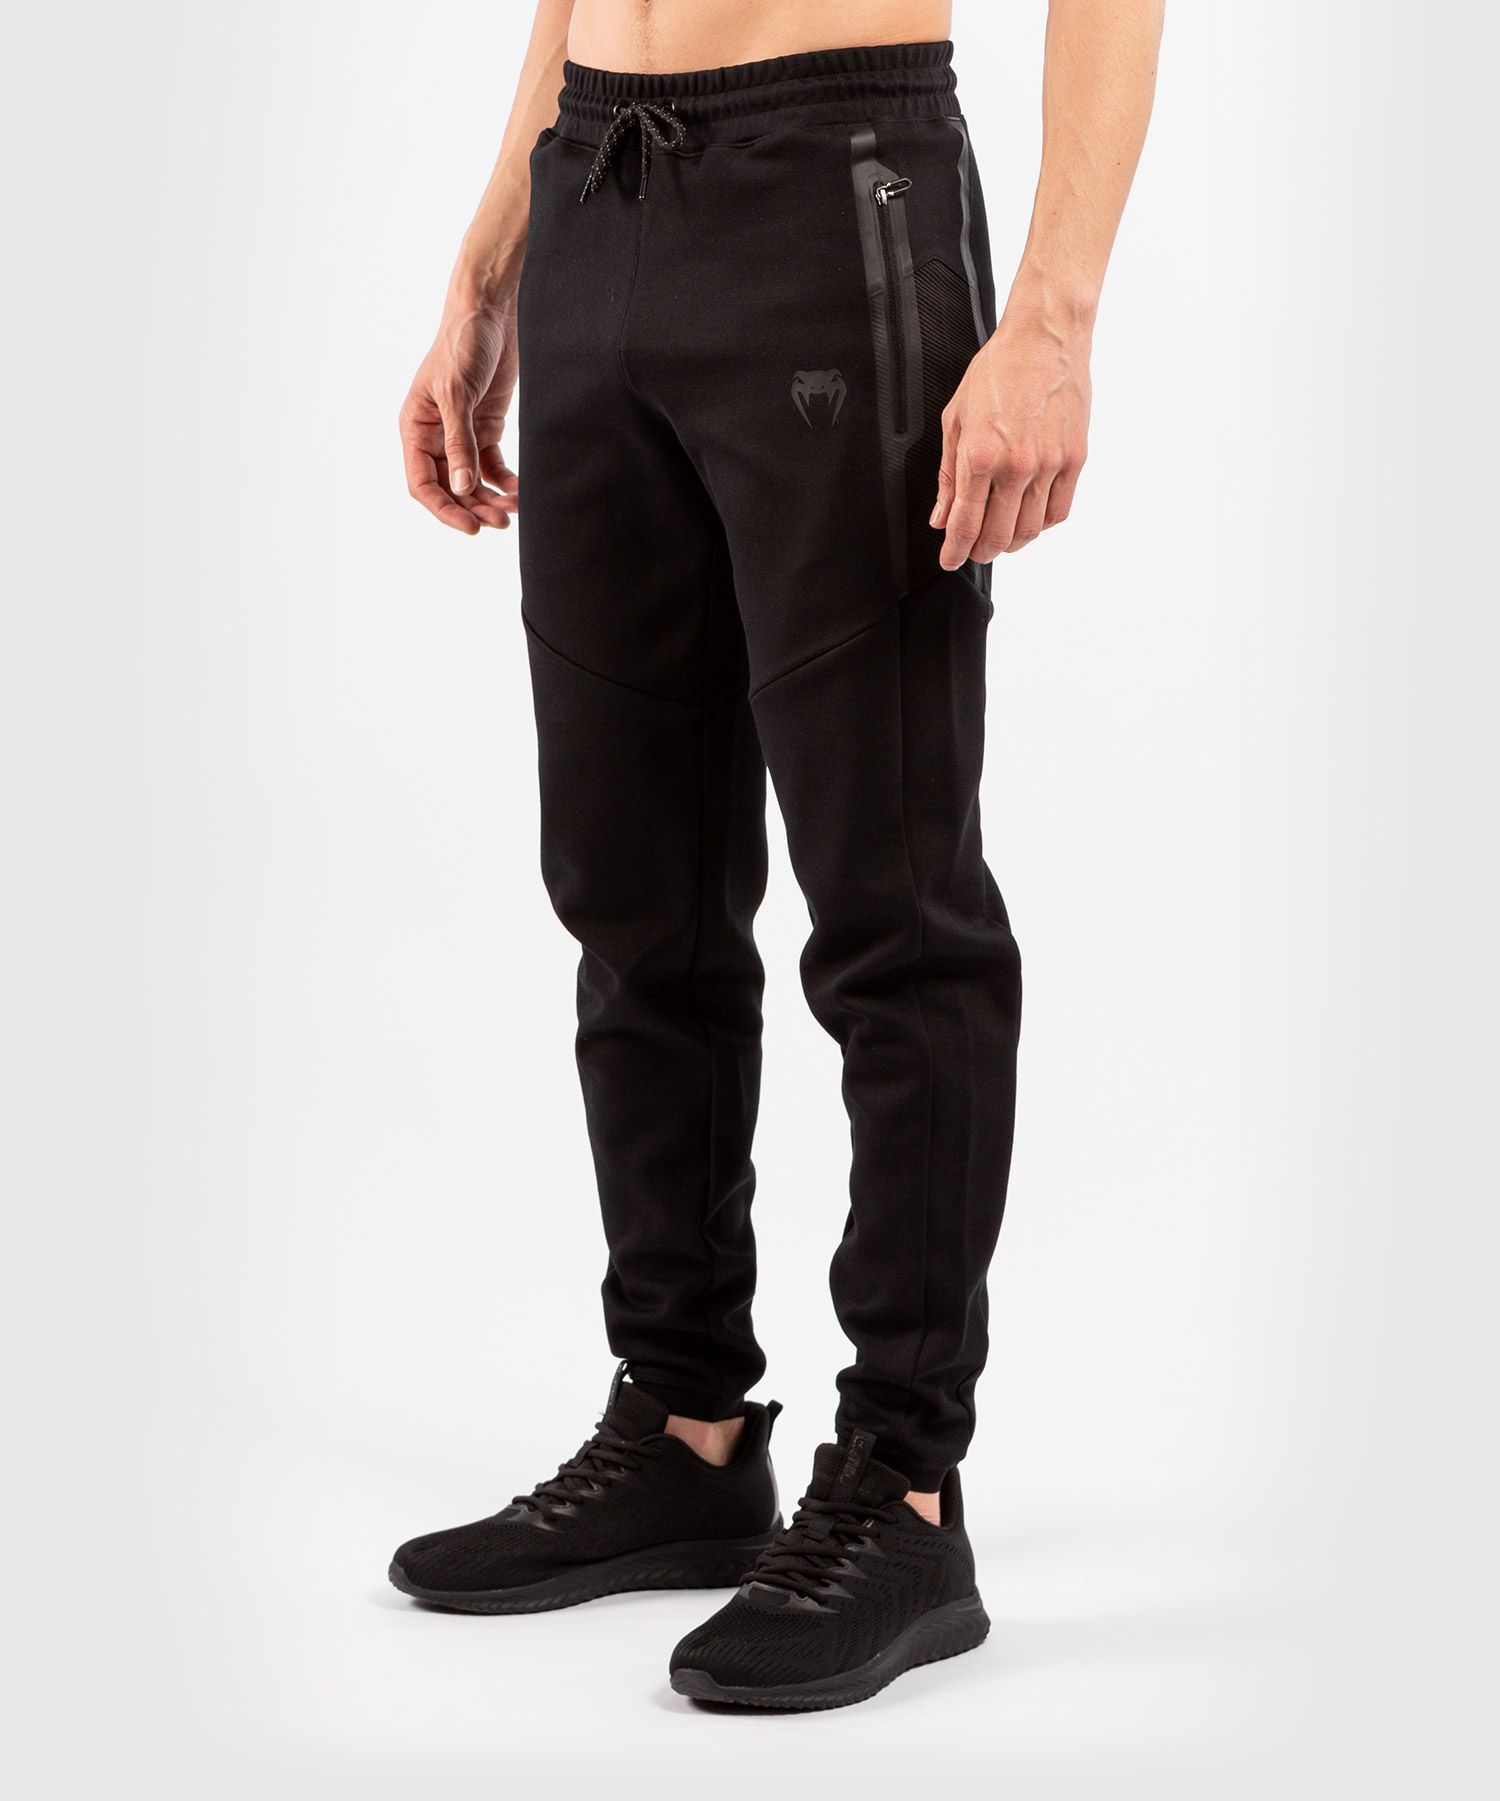 Pantalon de Jogging Venum Laser Evo 2.0 - Noir/Noir